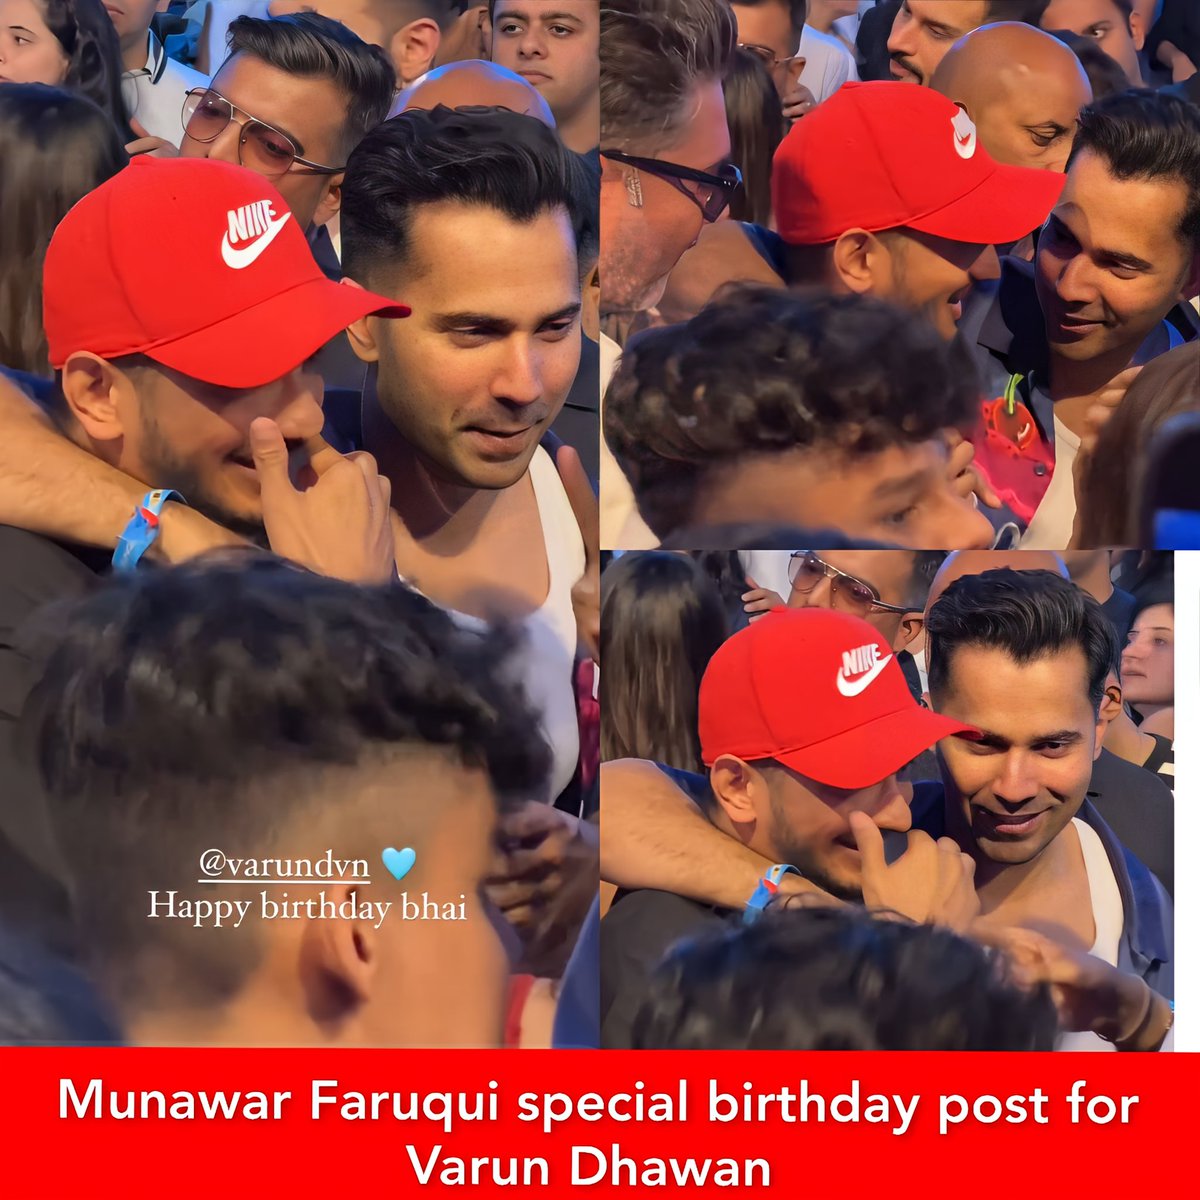 #MunawarFaruqui special birthday post for #VarunDhawan